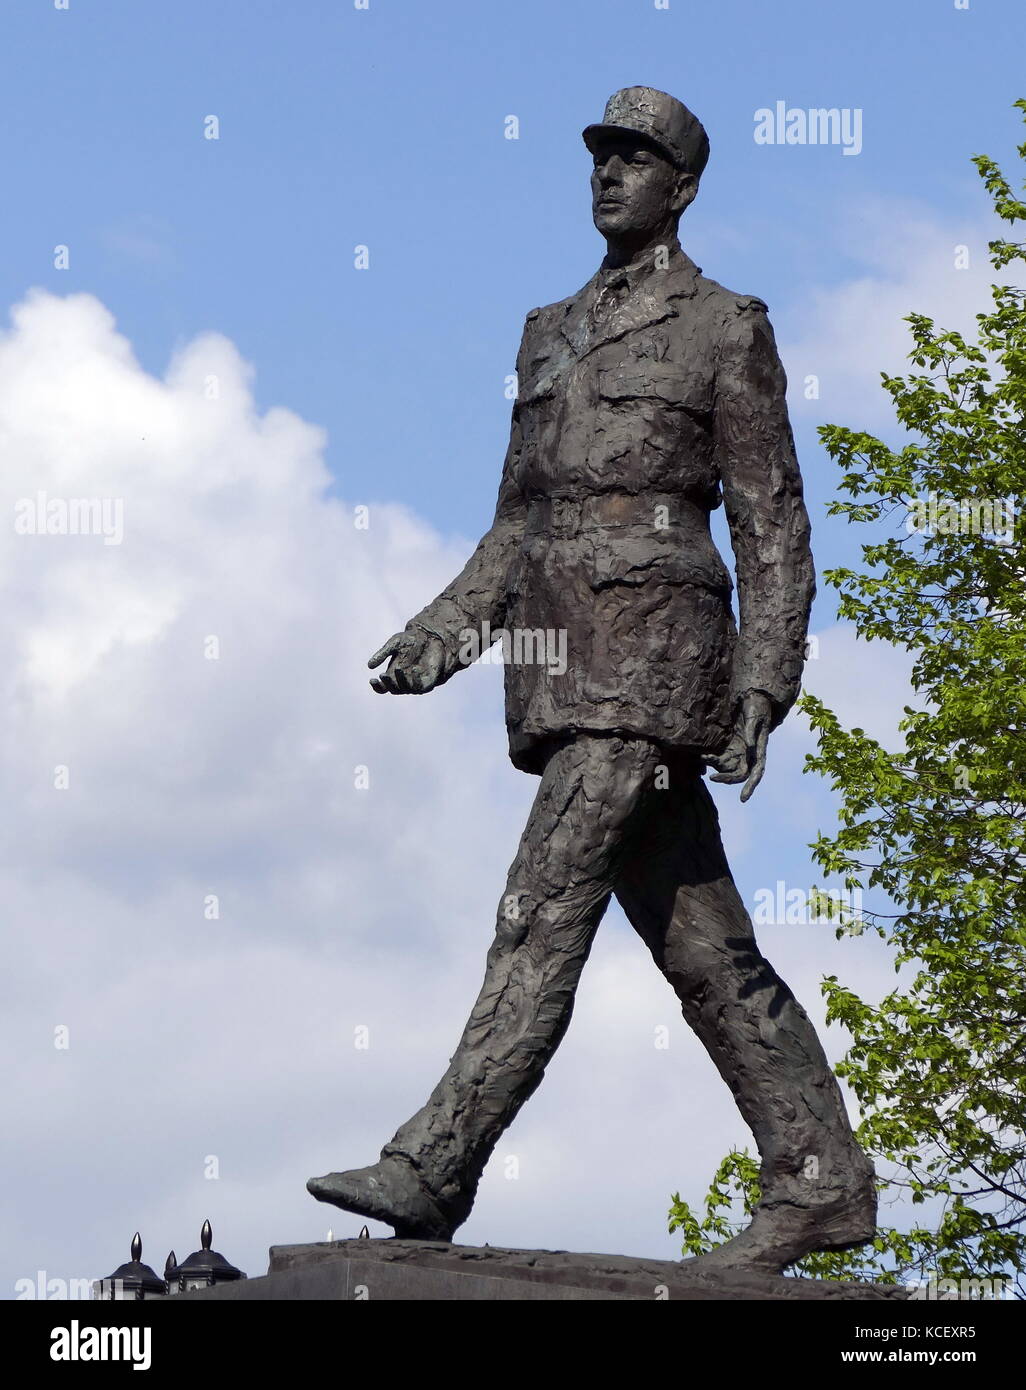 Foto von einer Statue des ehemaligen Präsidenten der Französischen Republik, Charles de Gaulle, ist Gegenstand eines der in Warschau mehr prominente Denkmäler. Schreitenden weg von dem, was einst der Kommunistischen Partei HQ, das Denkmal ist ein Geschenk der französischen Regierung. Vom 21. Jahrhundert Stockfoto